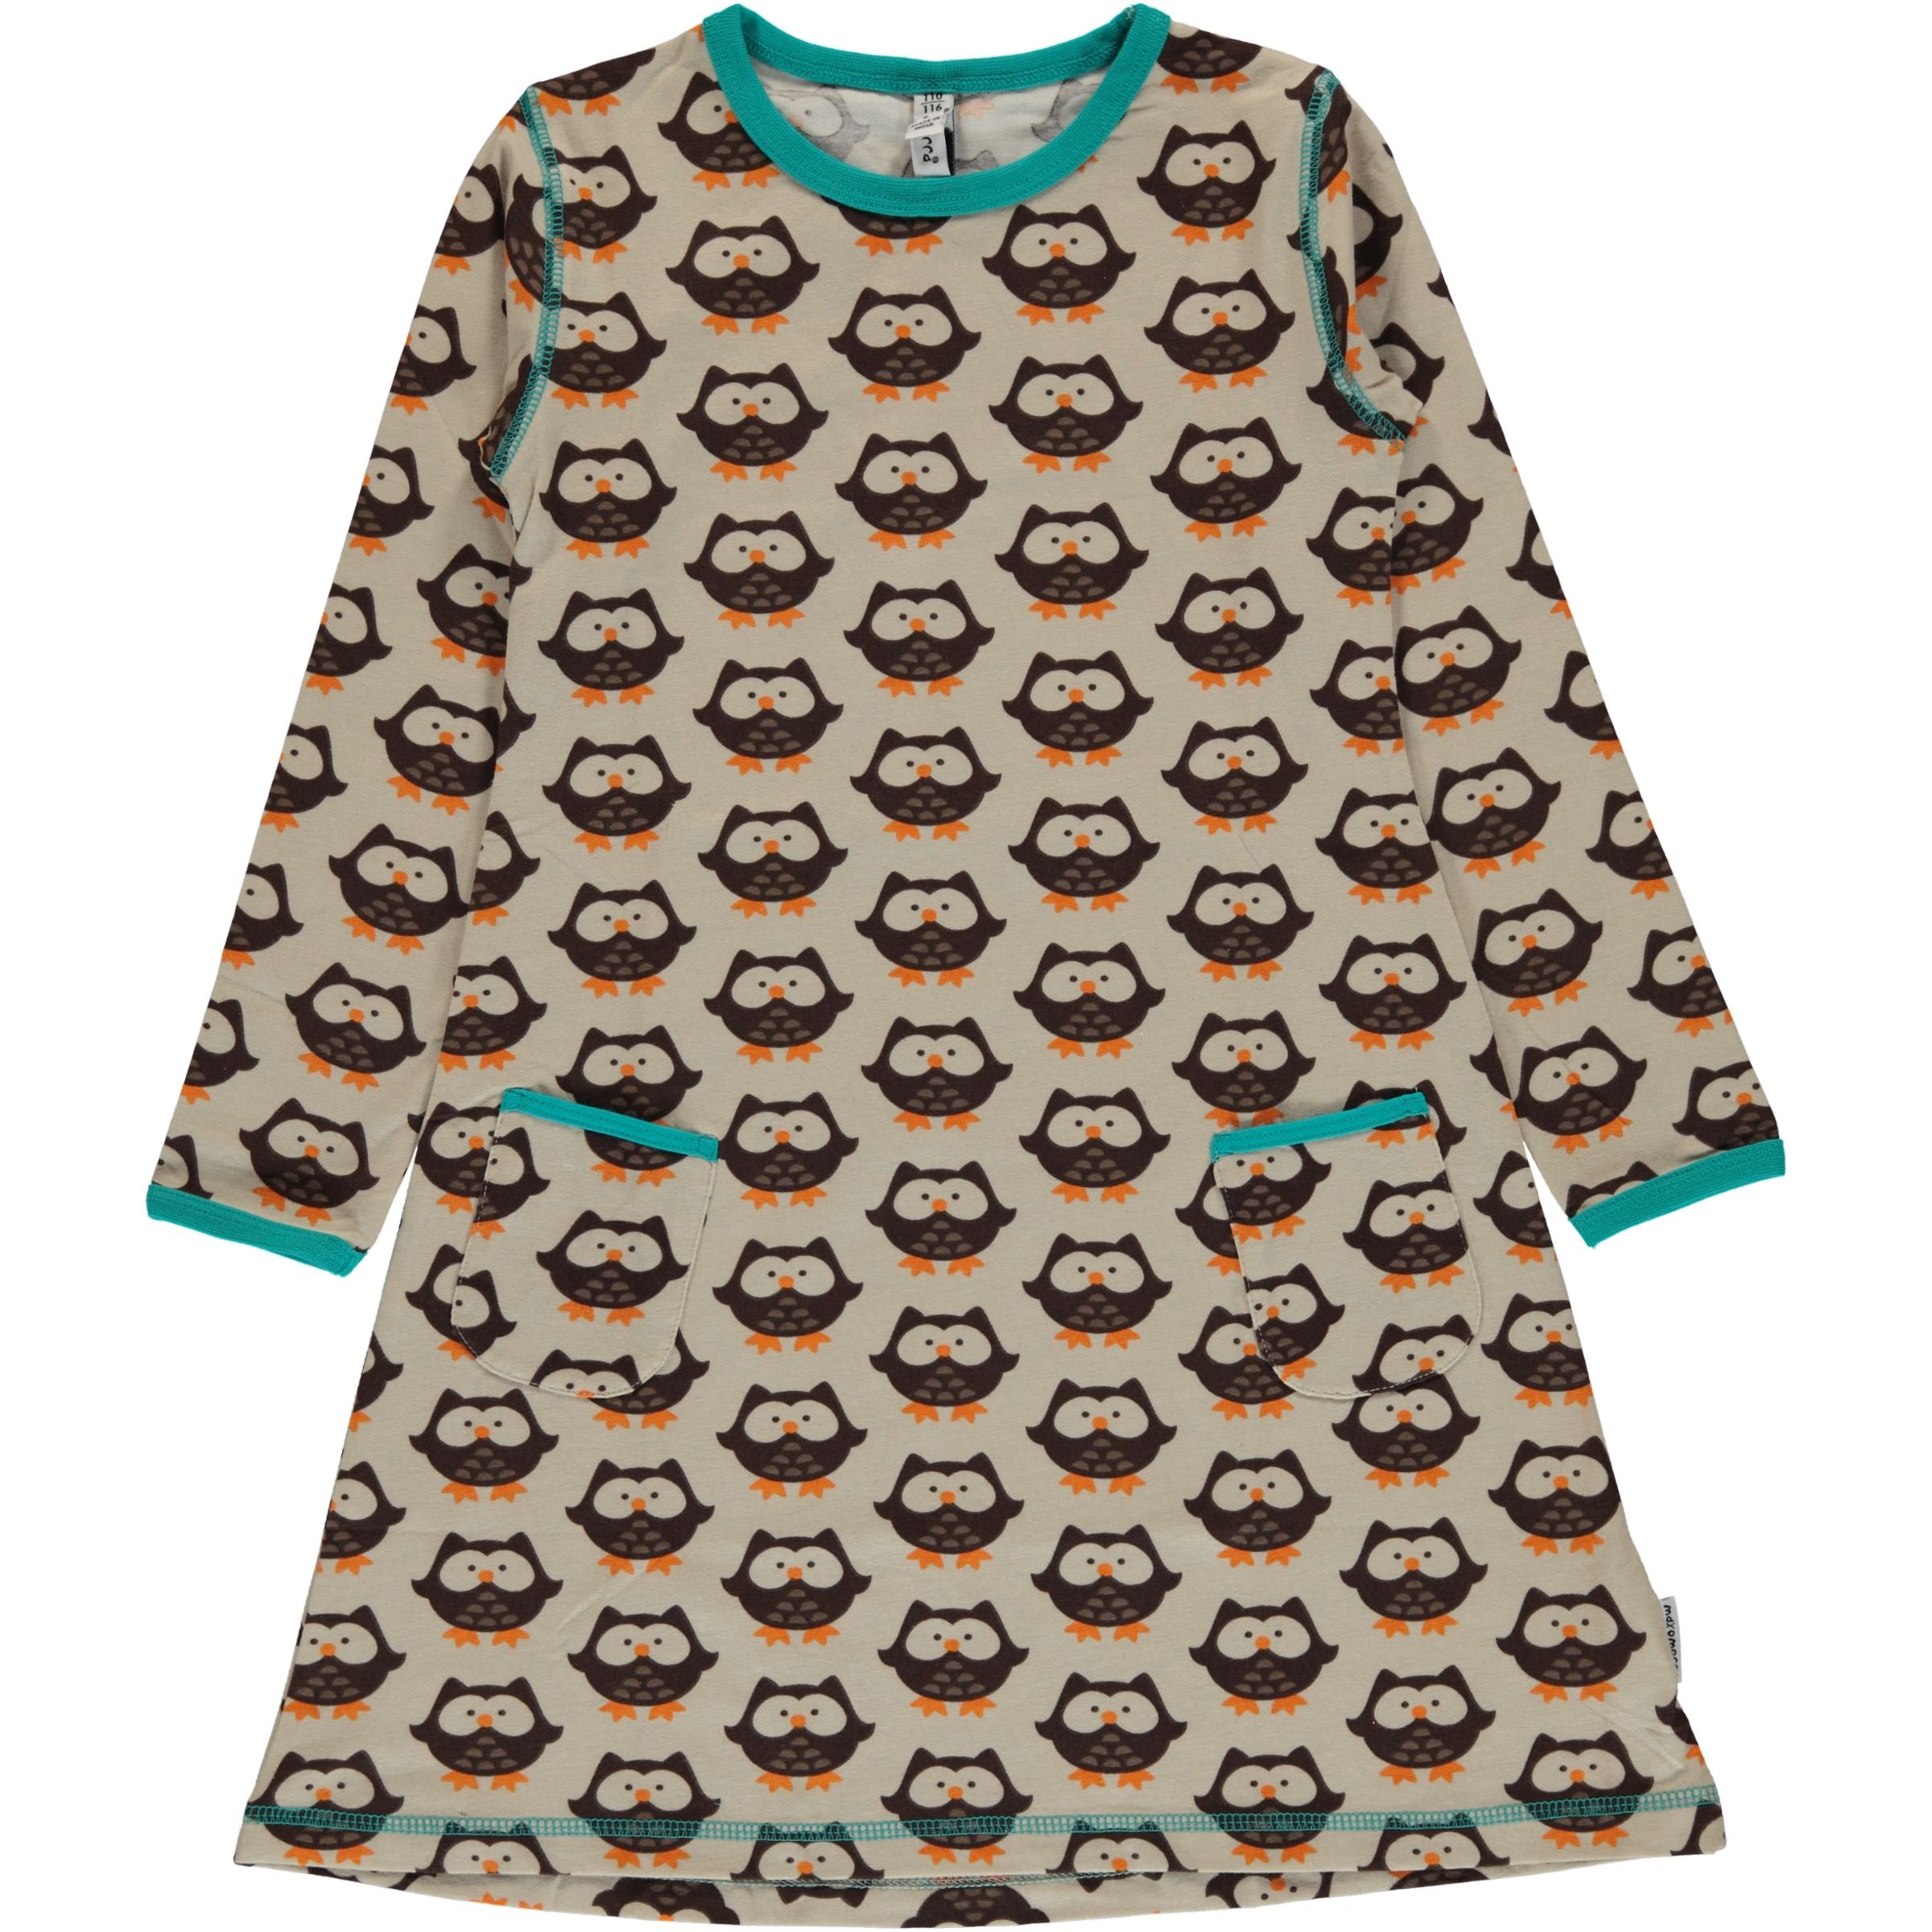 Children's Owl Dress - Maxomorra (Last Available)